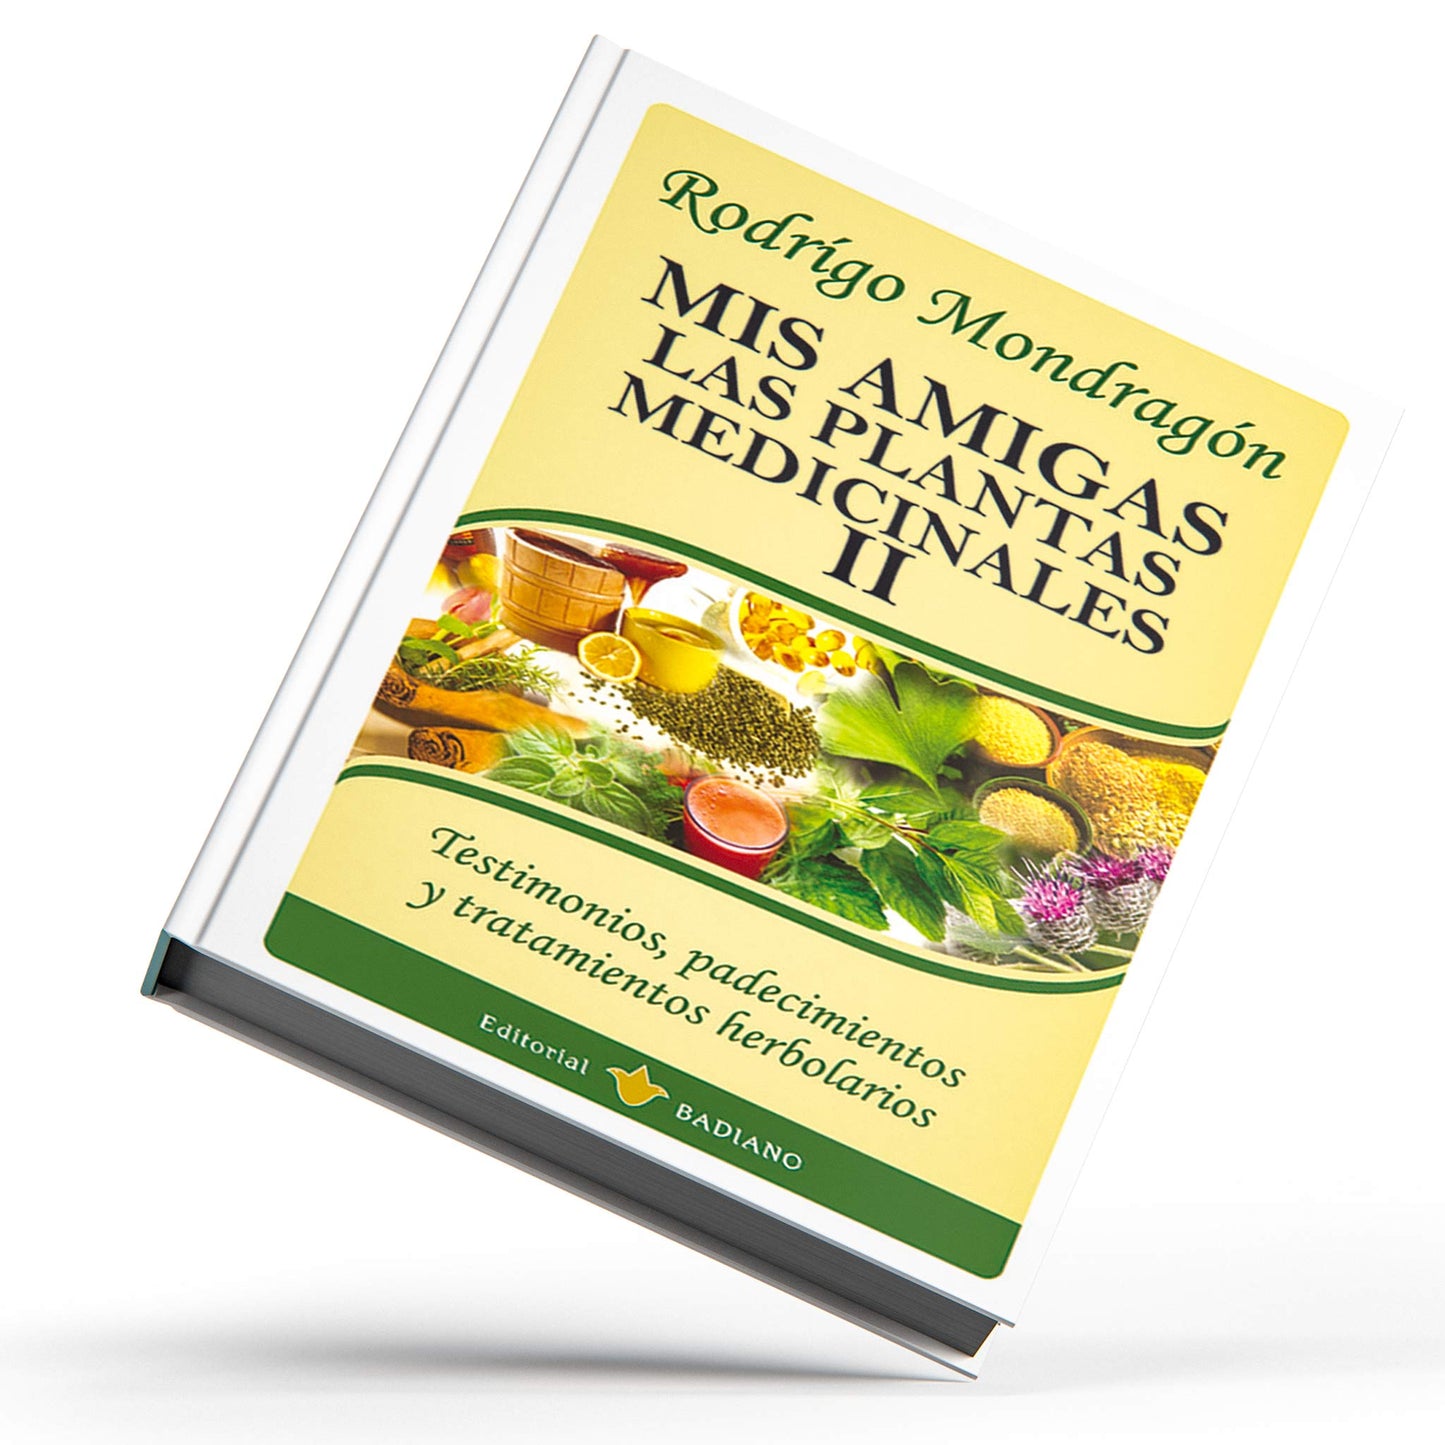 Mis amigas las plantas medicinales ® libro 2